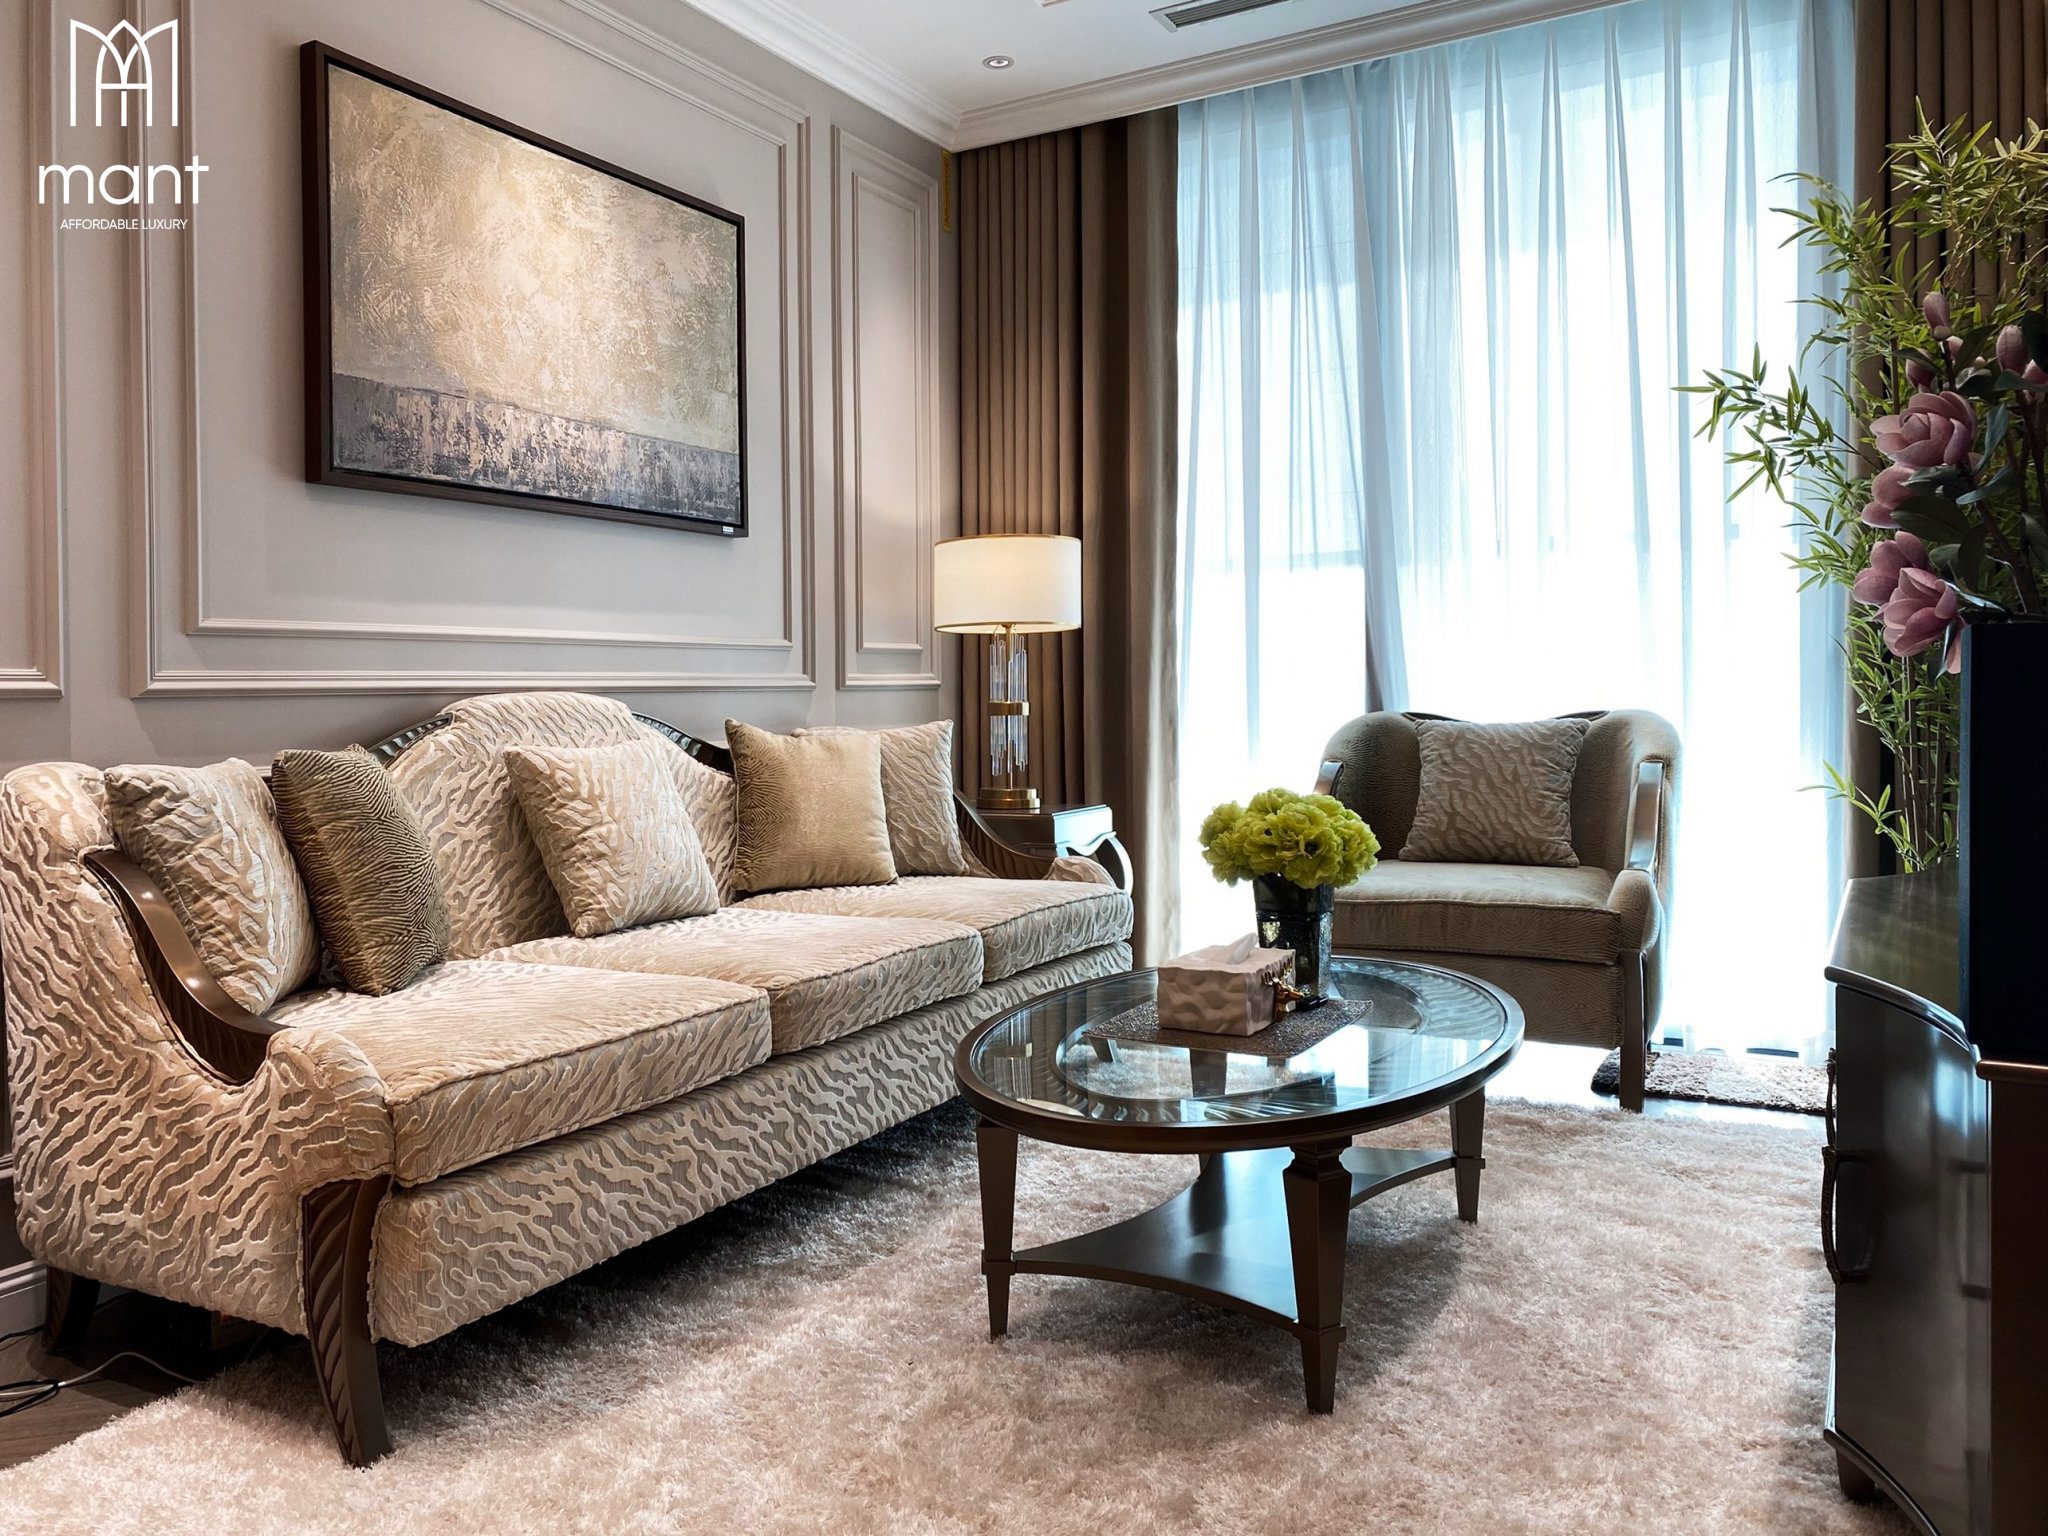 sofa văng đẹp được thiết kế bởi mant cho căn hộ Hà Đông